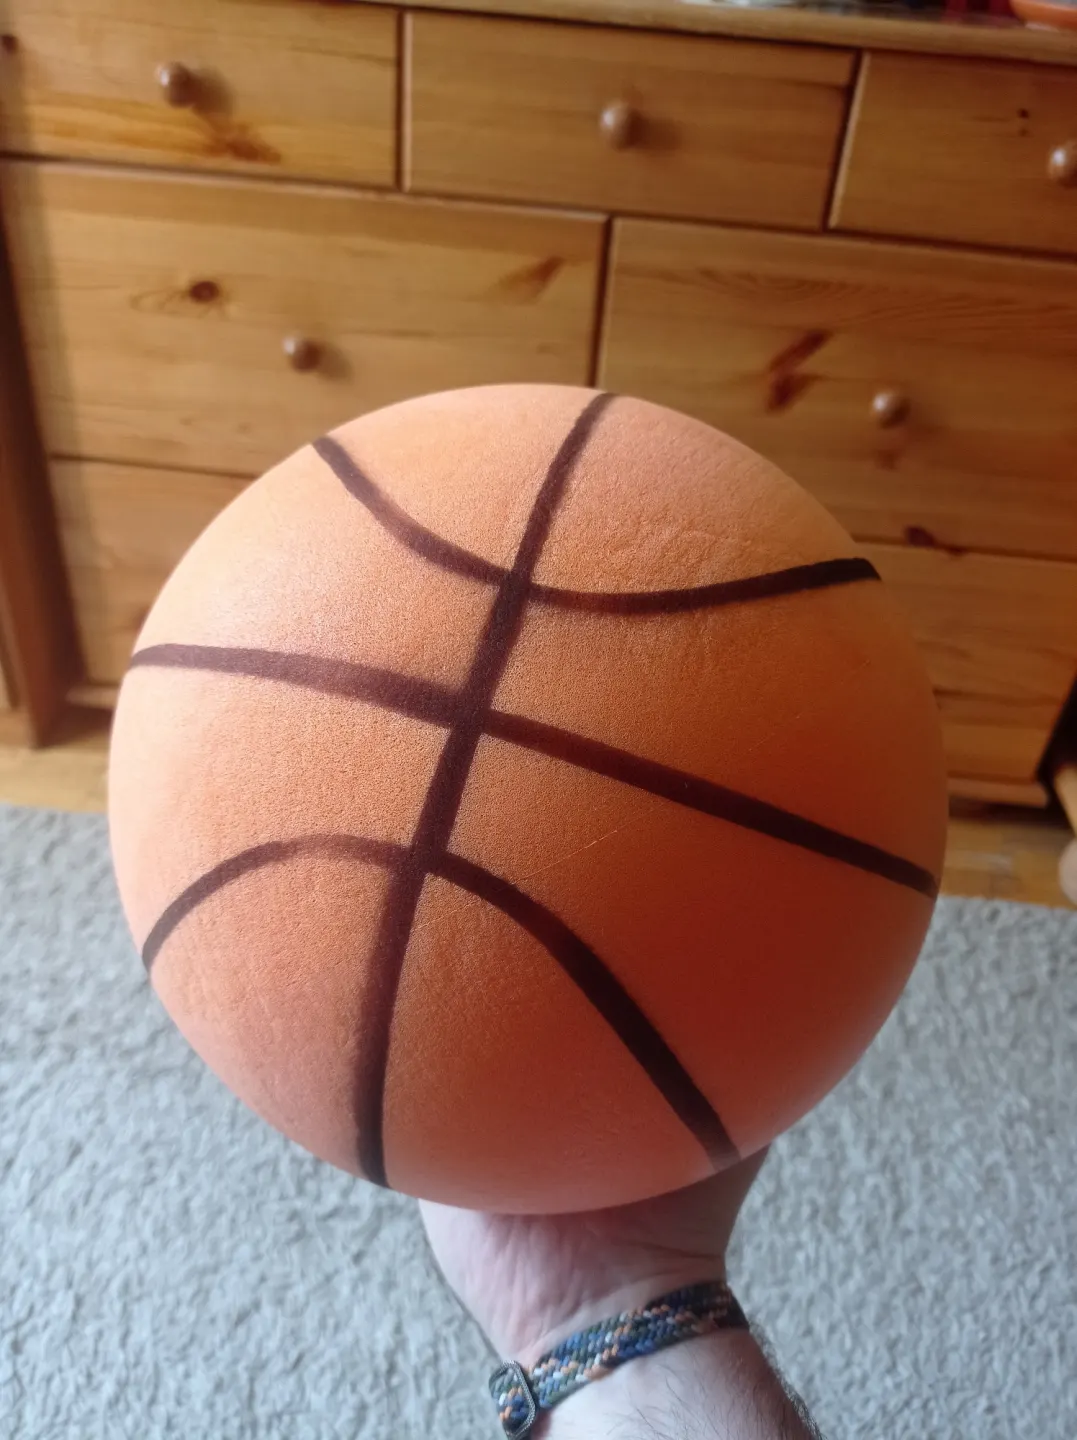 Bola de basquete silenciosa da @Hoop City 🇧🇷 #basketball